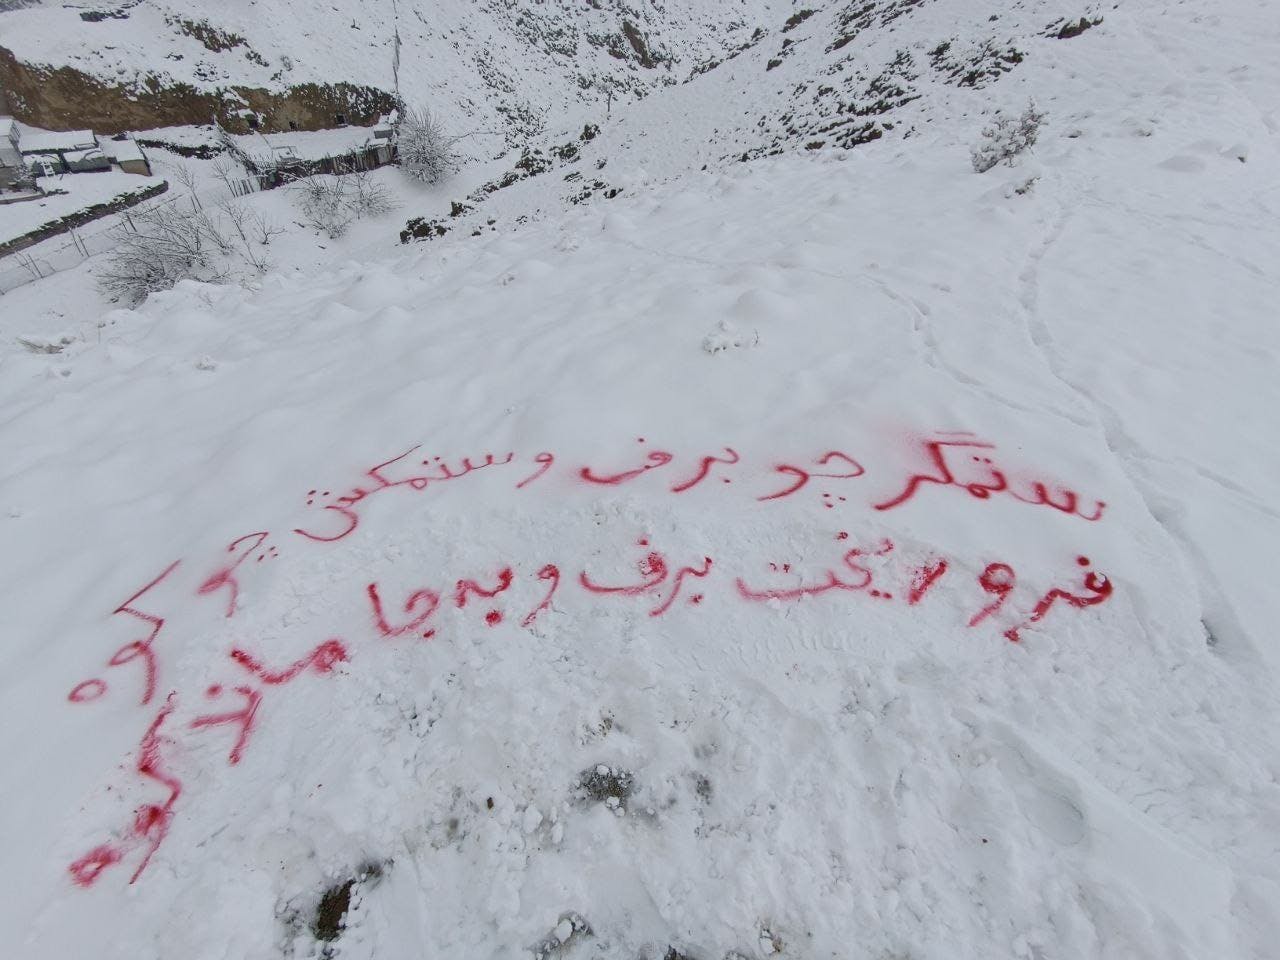 دانشگاه آزاد اسلامی علوم و تحقیقات تهران: بر روی برف به رنگ سرخ نوشته‌اند: ستمگر چو برف و ستکمش چو کوه/ فرو ریخت برف و به جا ماند کوه.